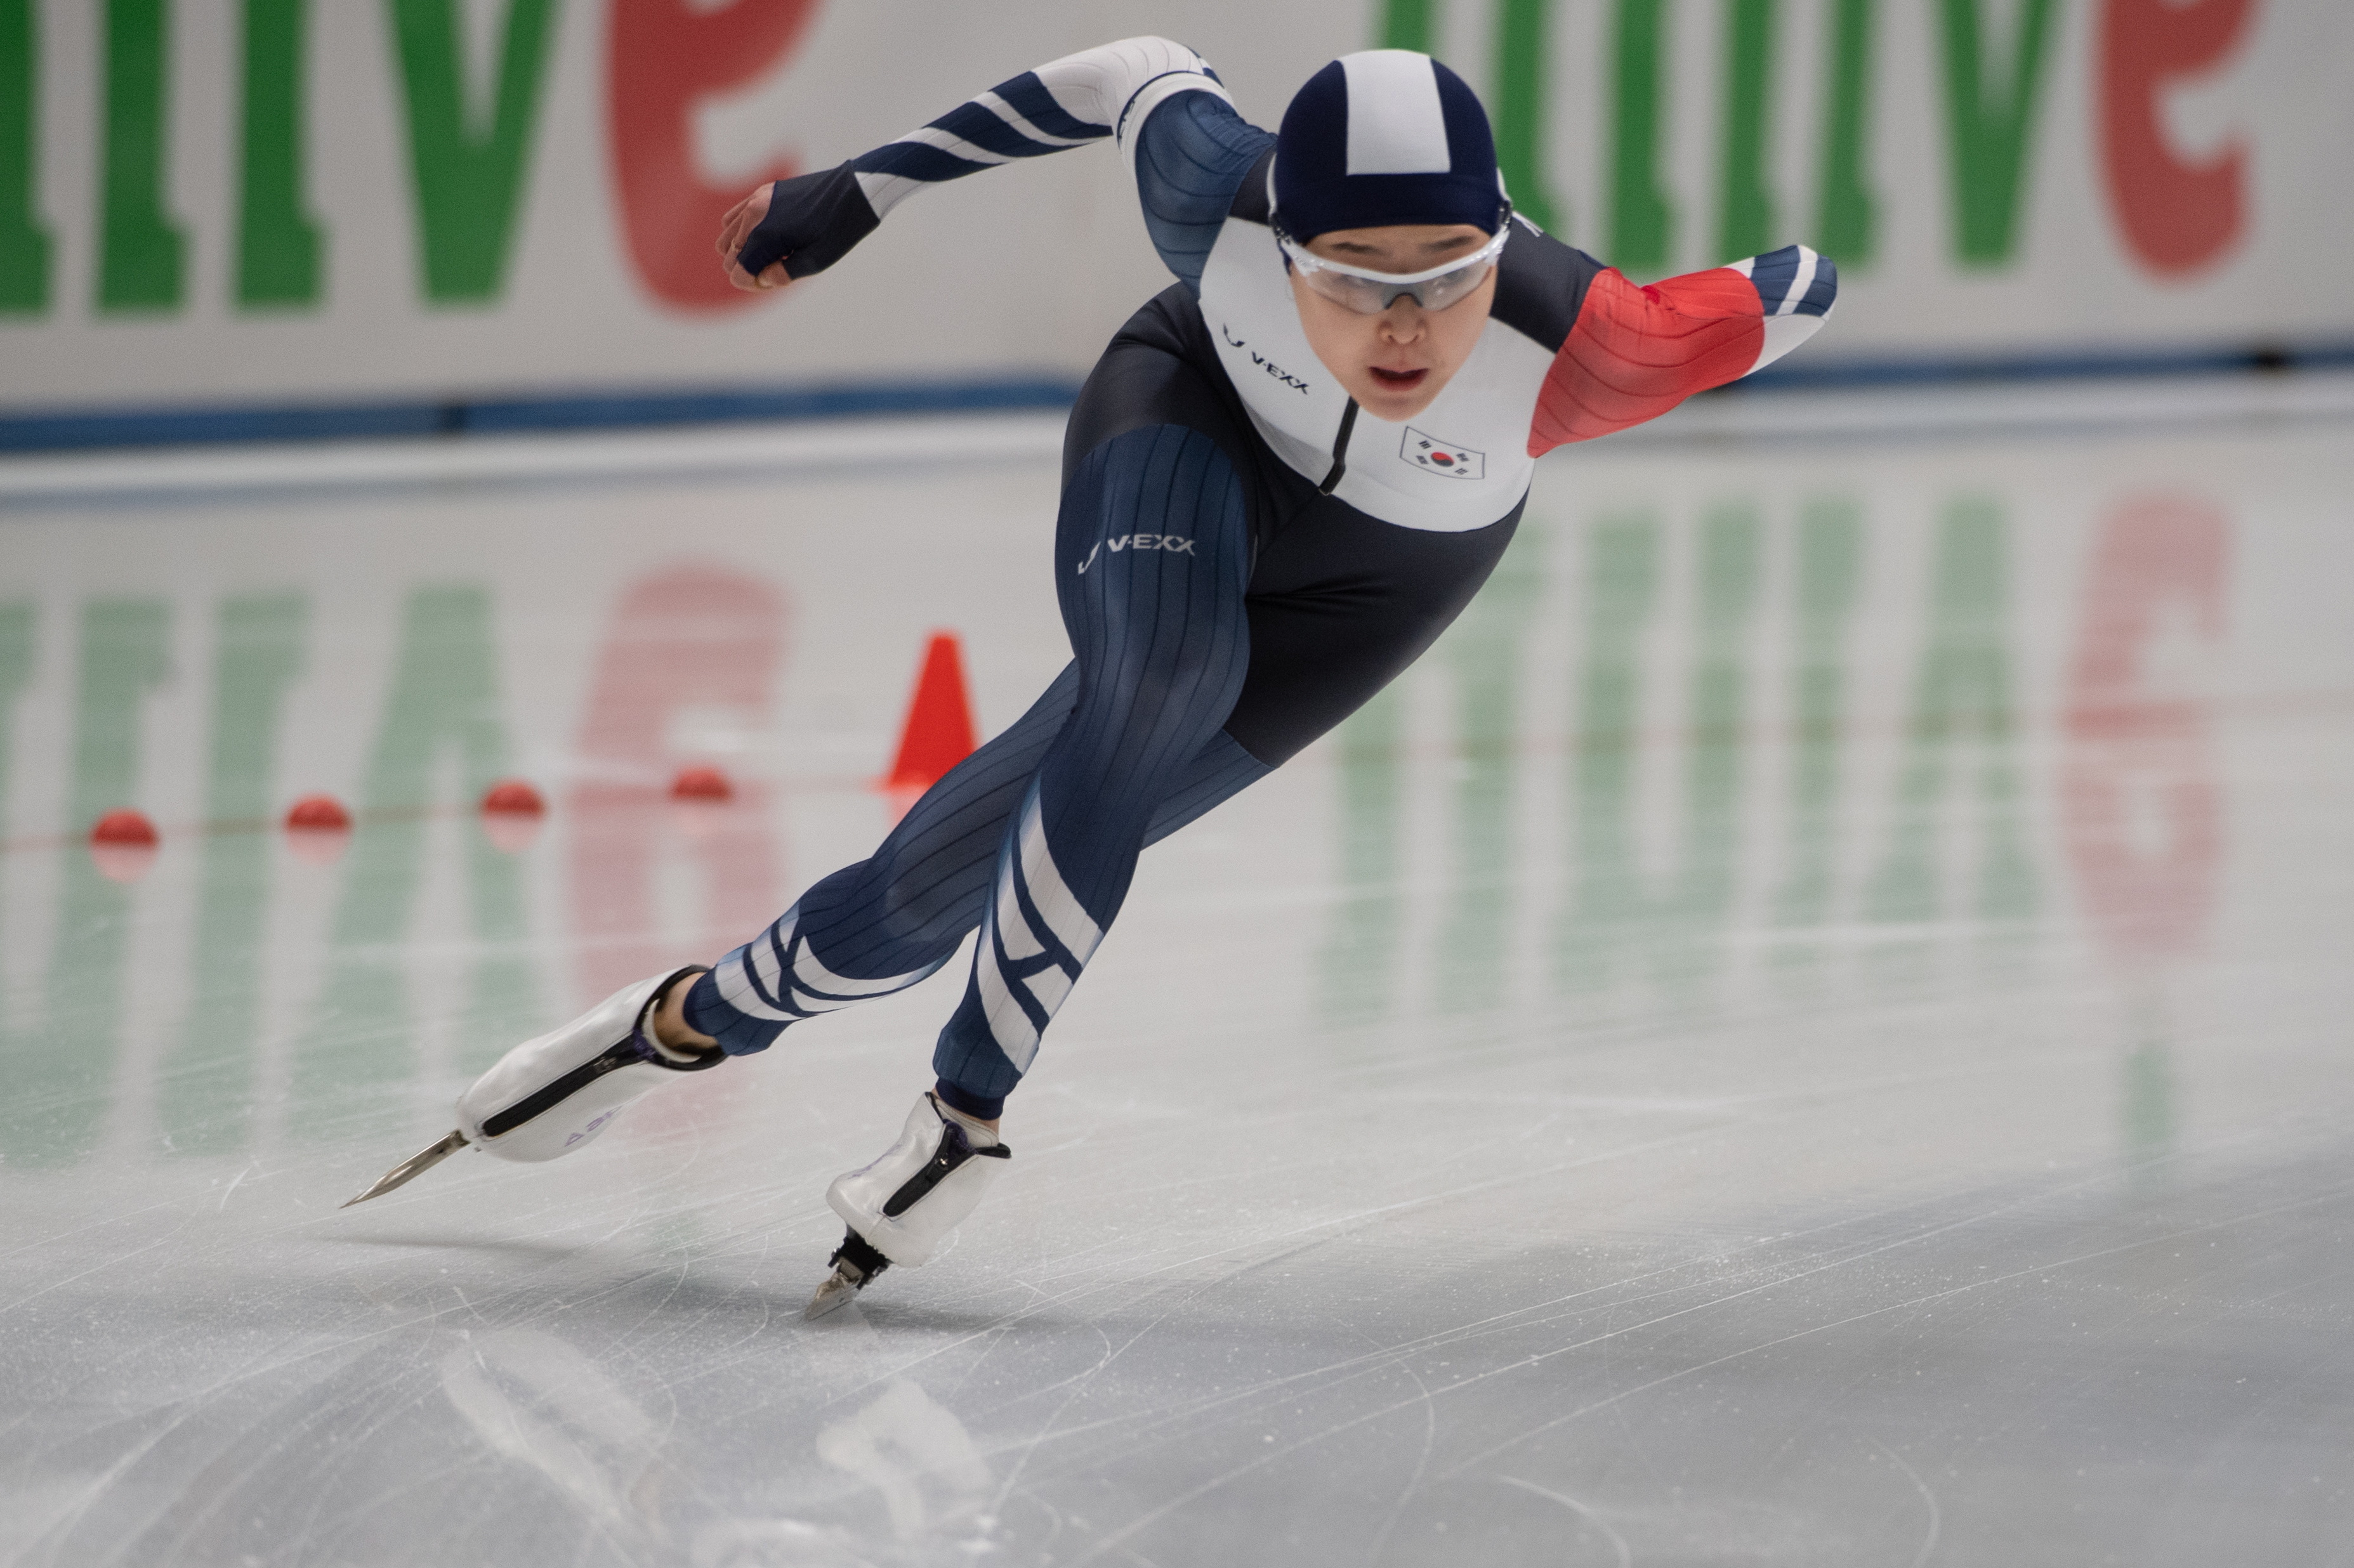 ‘신 빙속여제’ 김민선이 11일(한국시간) 폴란드에서 열린 ISU 스피드스케이팅 월드컵 여자 500m에서 금빛 질주를 하고 있다.  EPA 연합뉴스